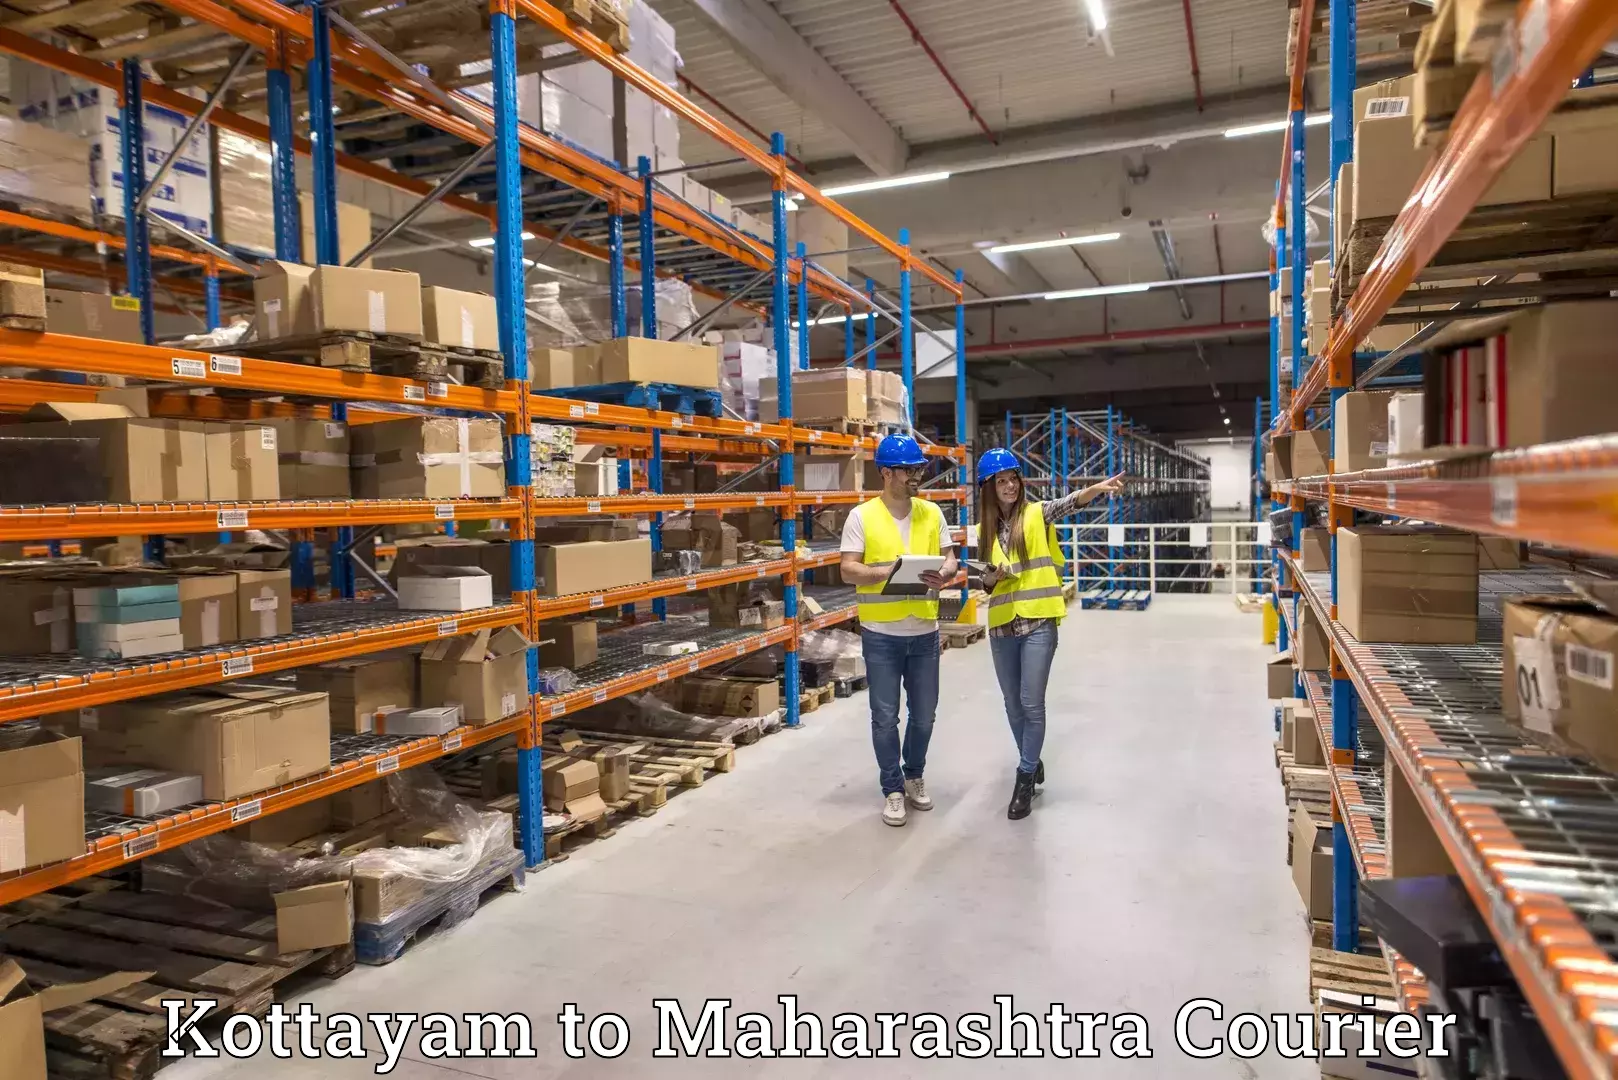 Doorstep delivery service Kottayam to Maharashtra